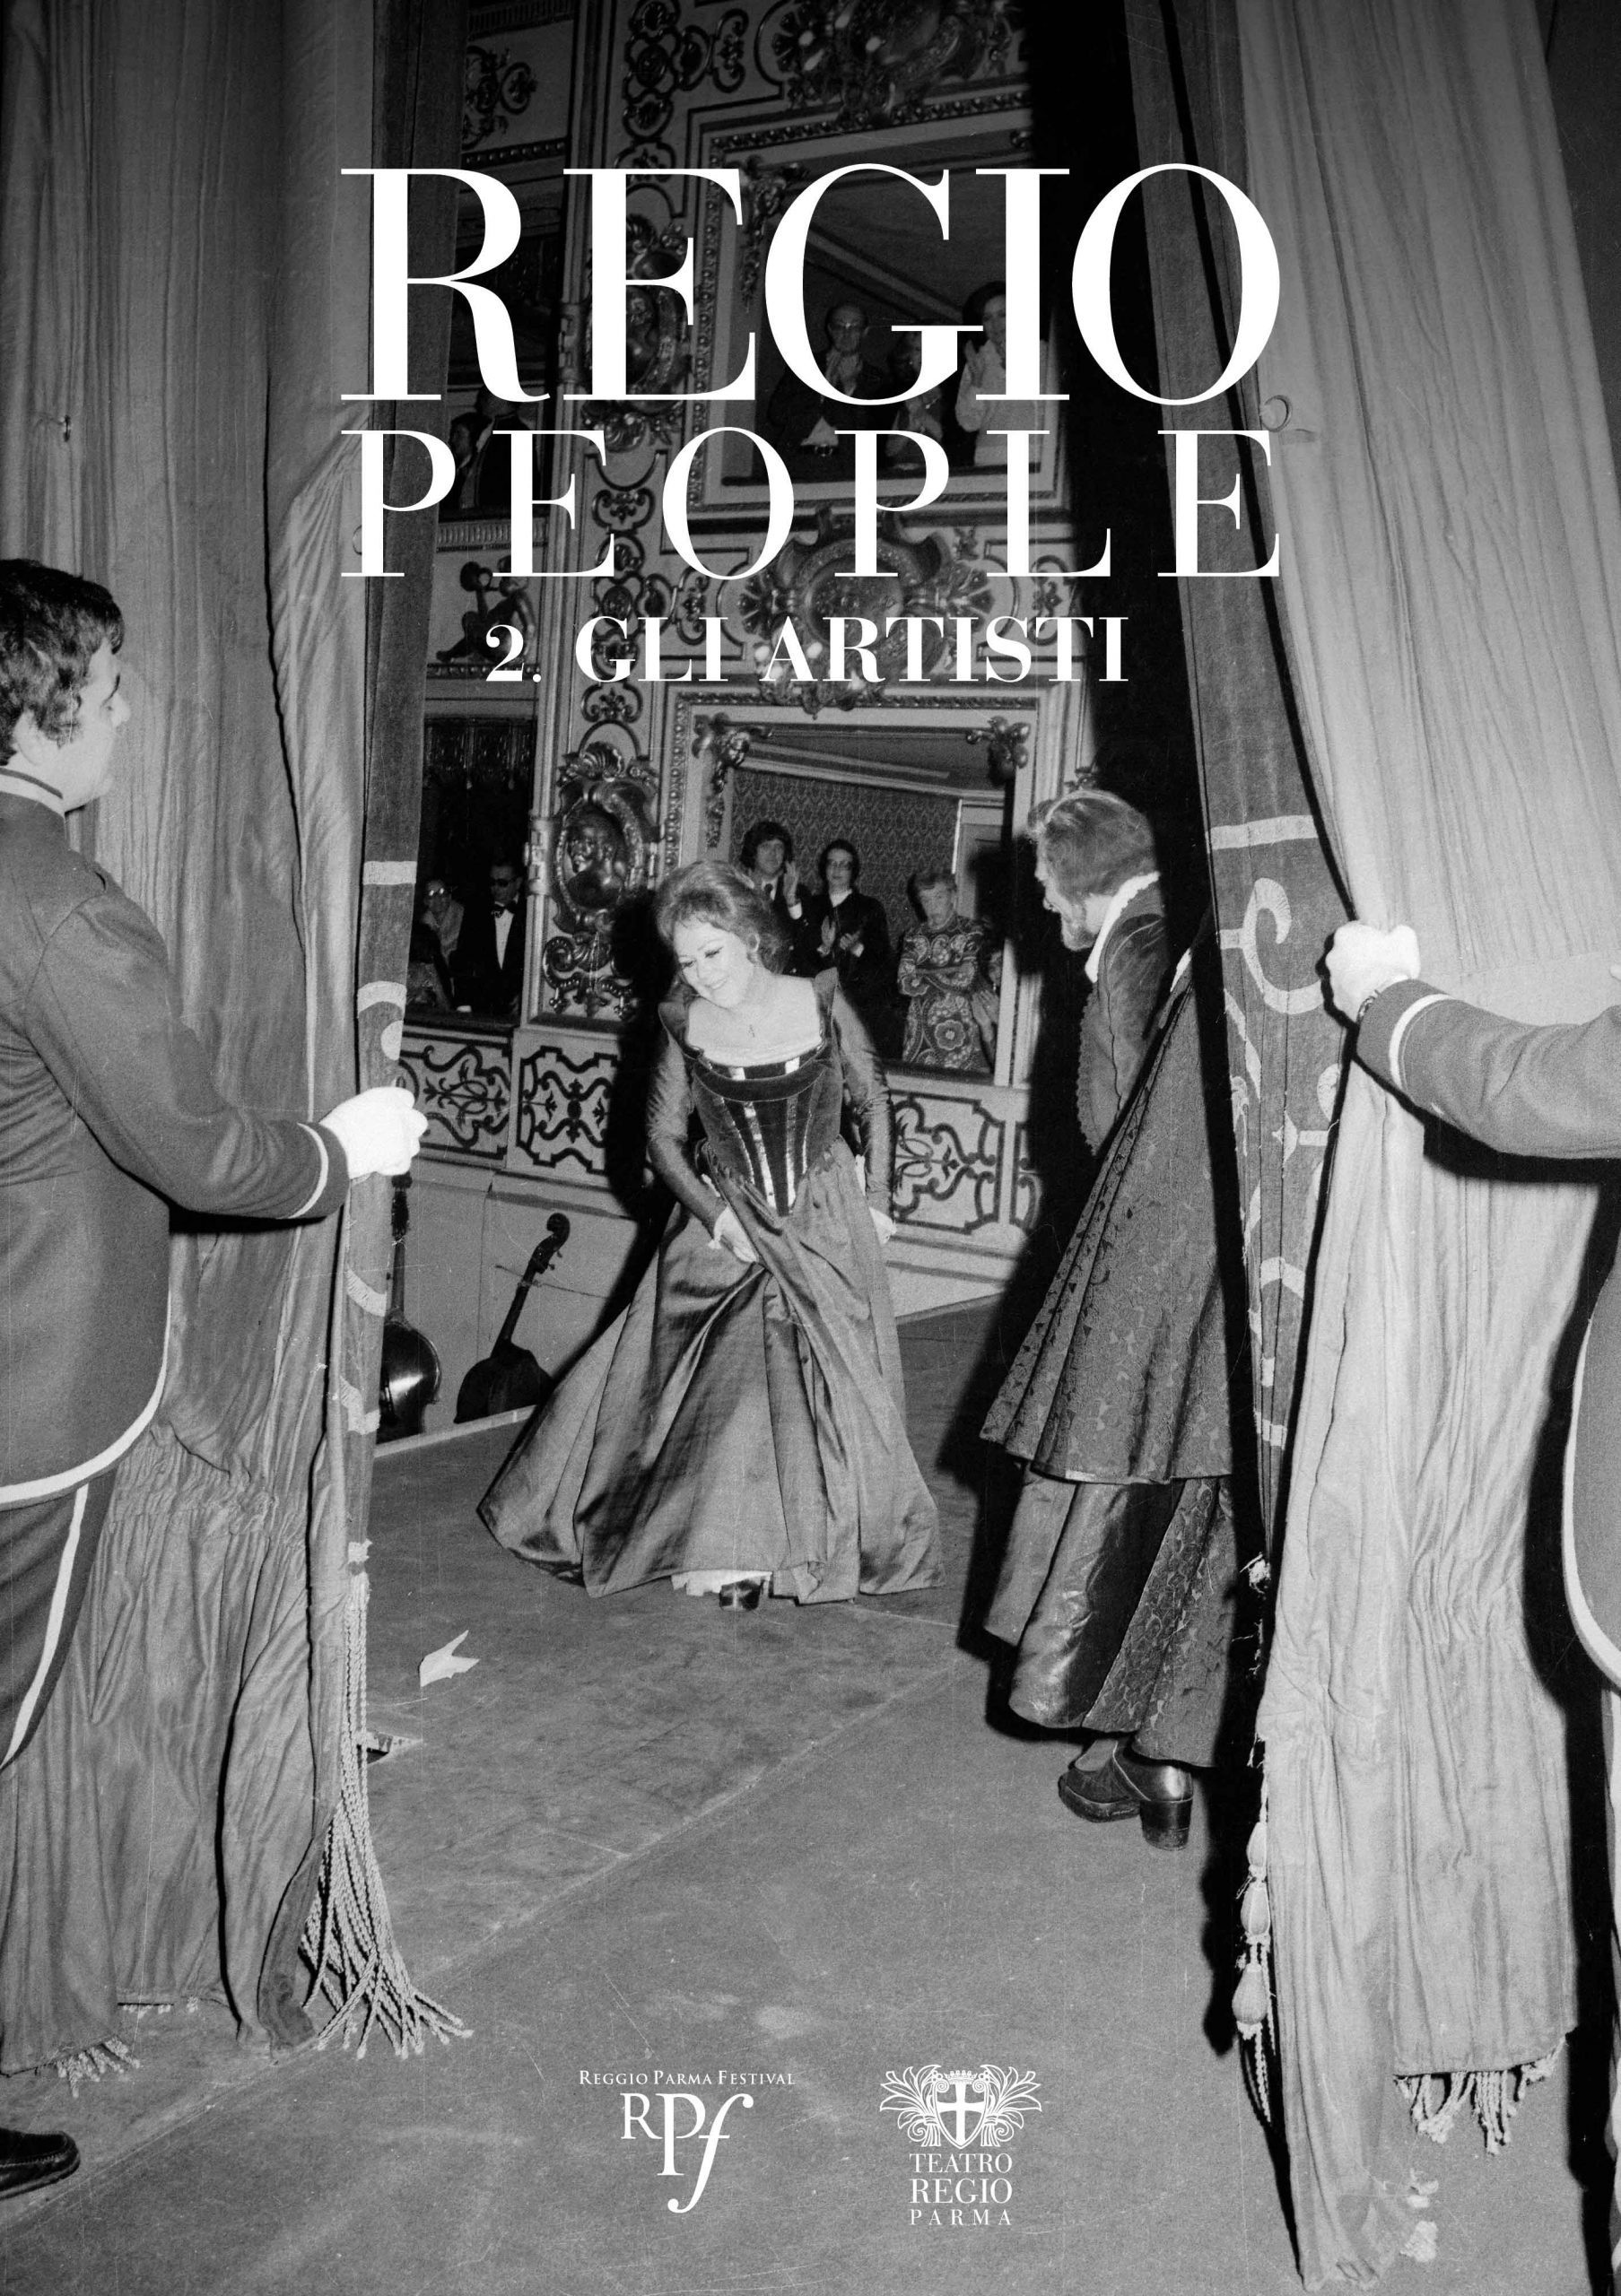 Regio People 2. Gli artisti: il nuovo volume fotografico realizzato con il sostegno di Reggio Parma Festival ed edito dal Teatro Regio Di Parma